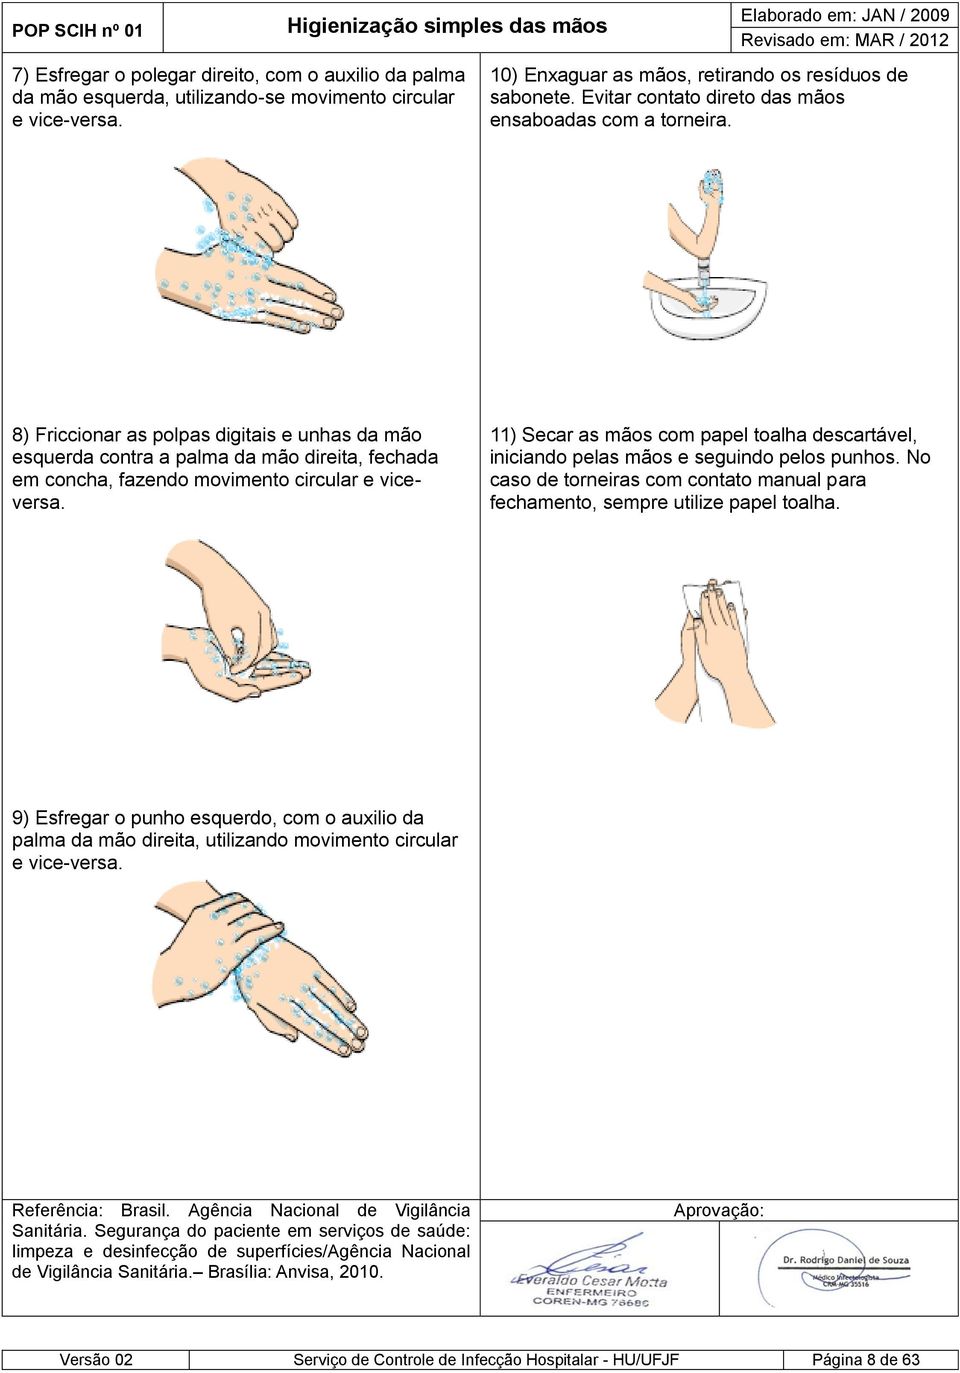 8) Friccionar as polpas digitais e unhas da mão esquerda contra a palma da mão direita, fechada em concha, fazendo movimento circular e viceversa.